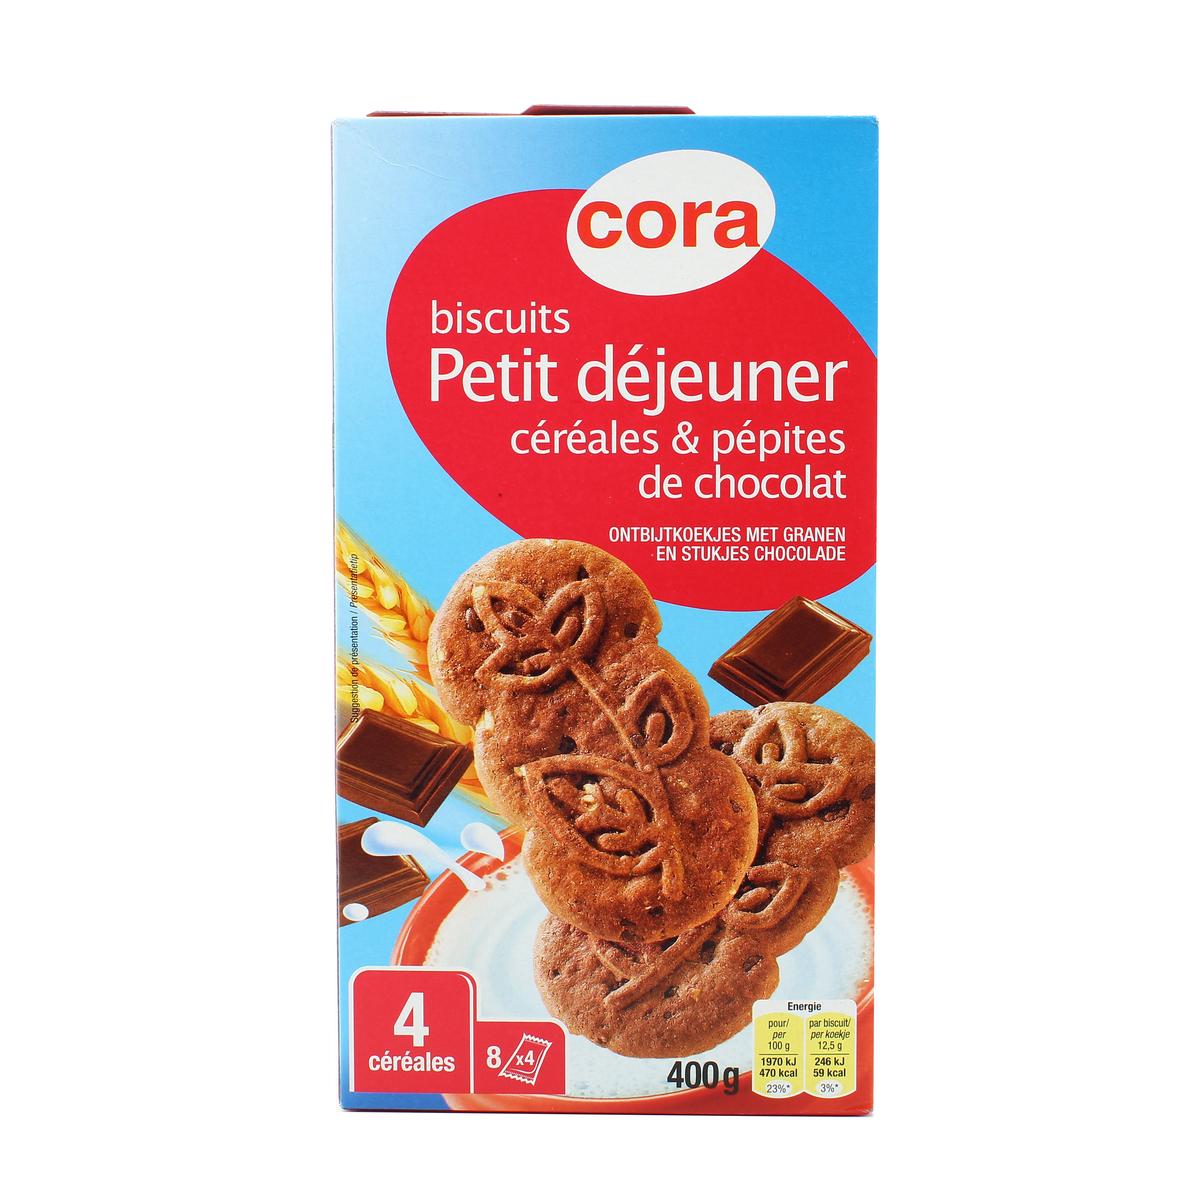 Acheter Promotion Cora Palets bretons, Lot de 2 paquets de 2x125g